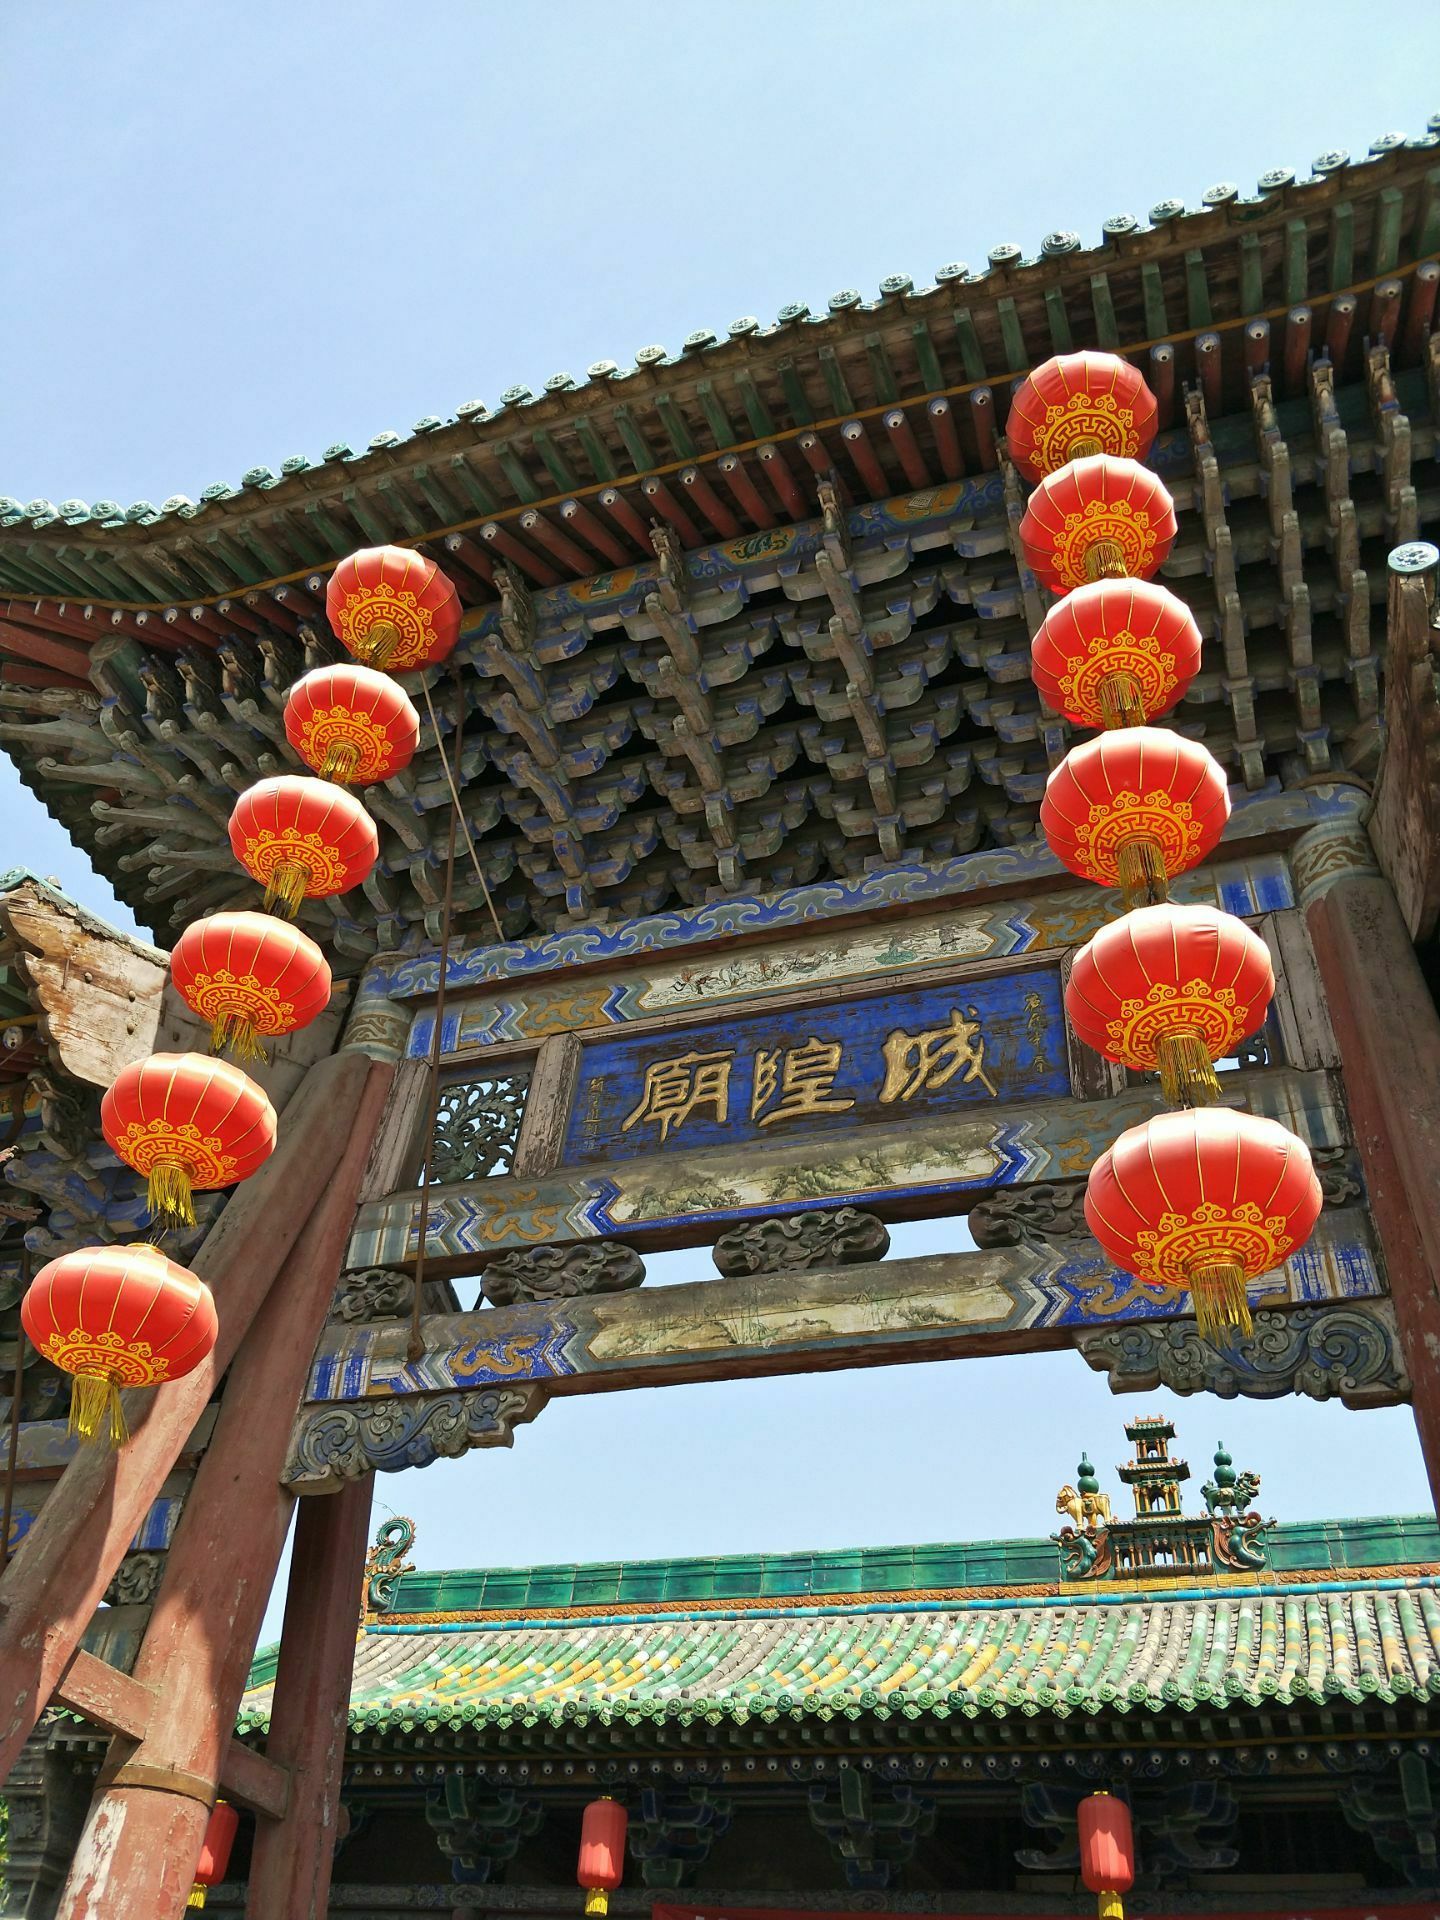 上海城隍庙灯会 - 绝美图库 - 华声论坛